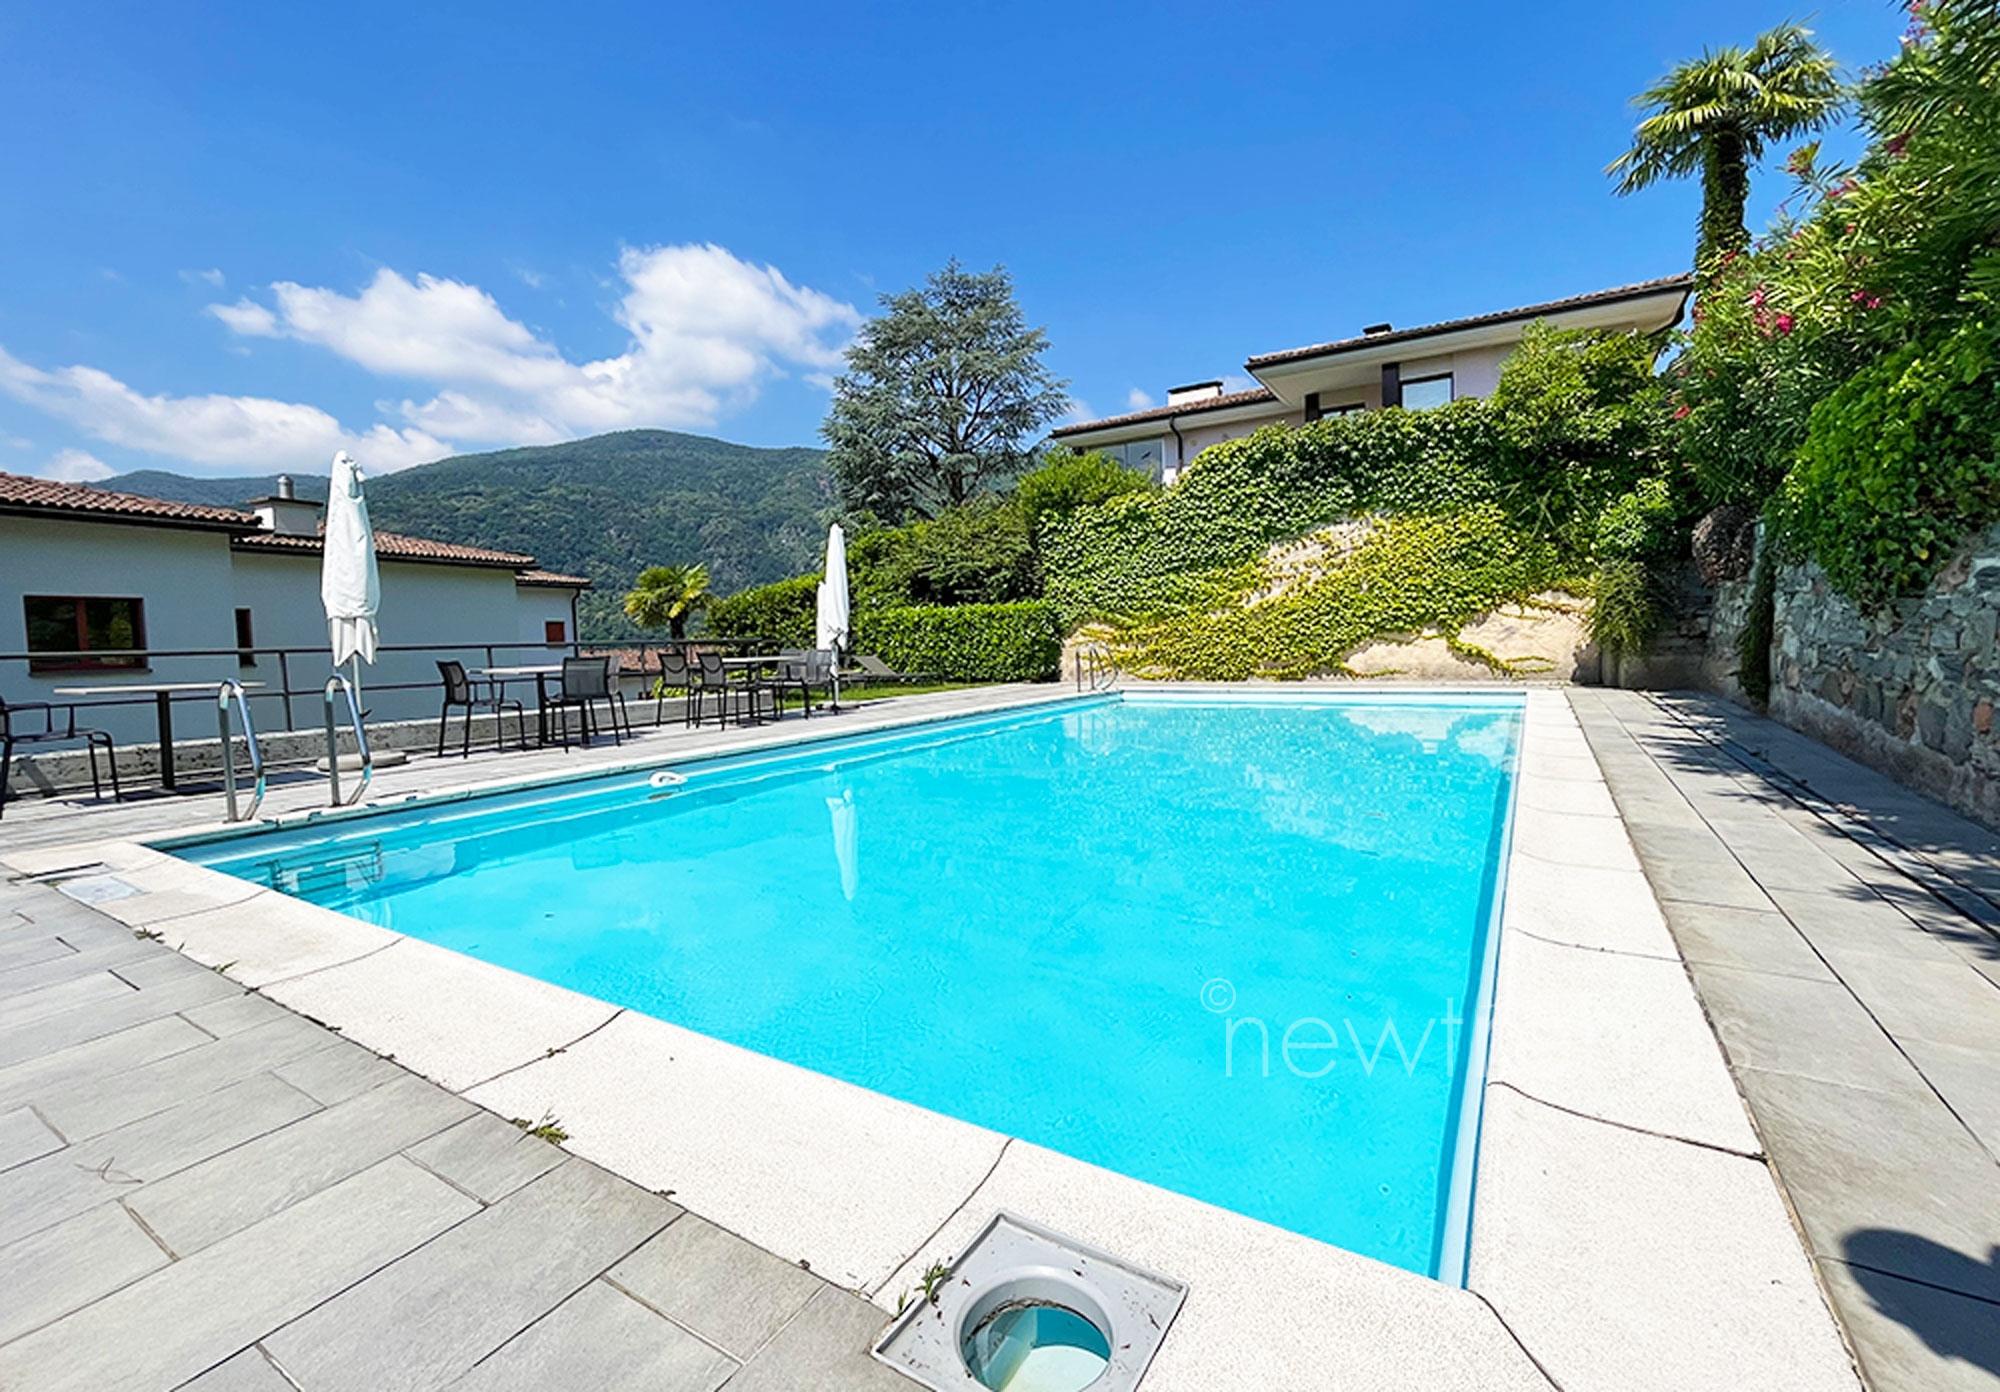 affittasi casa con giardino vista lago a morcote: foto grande piscina condominiale (privata)